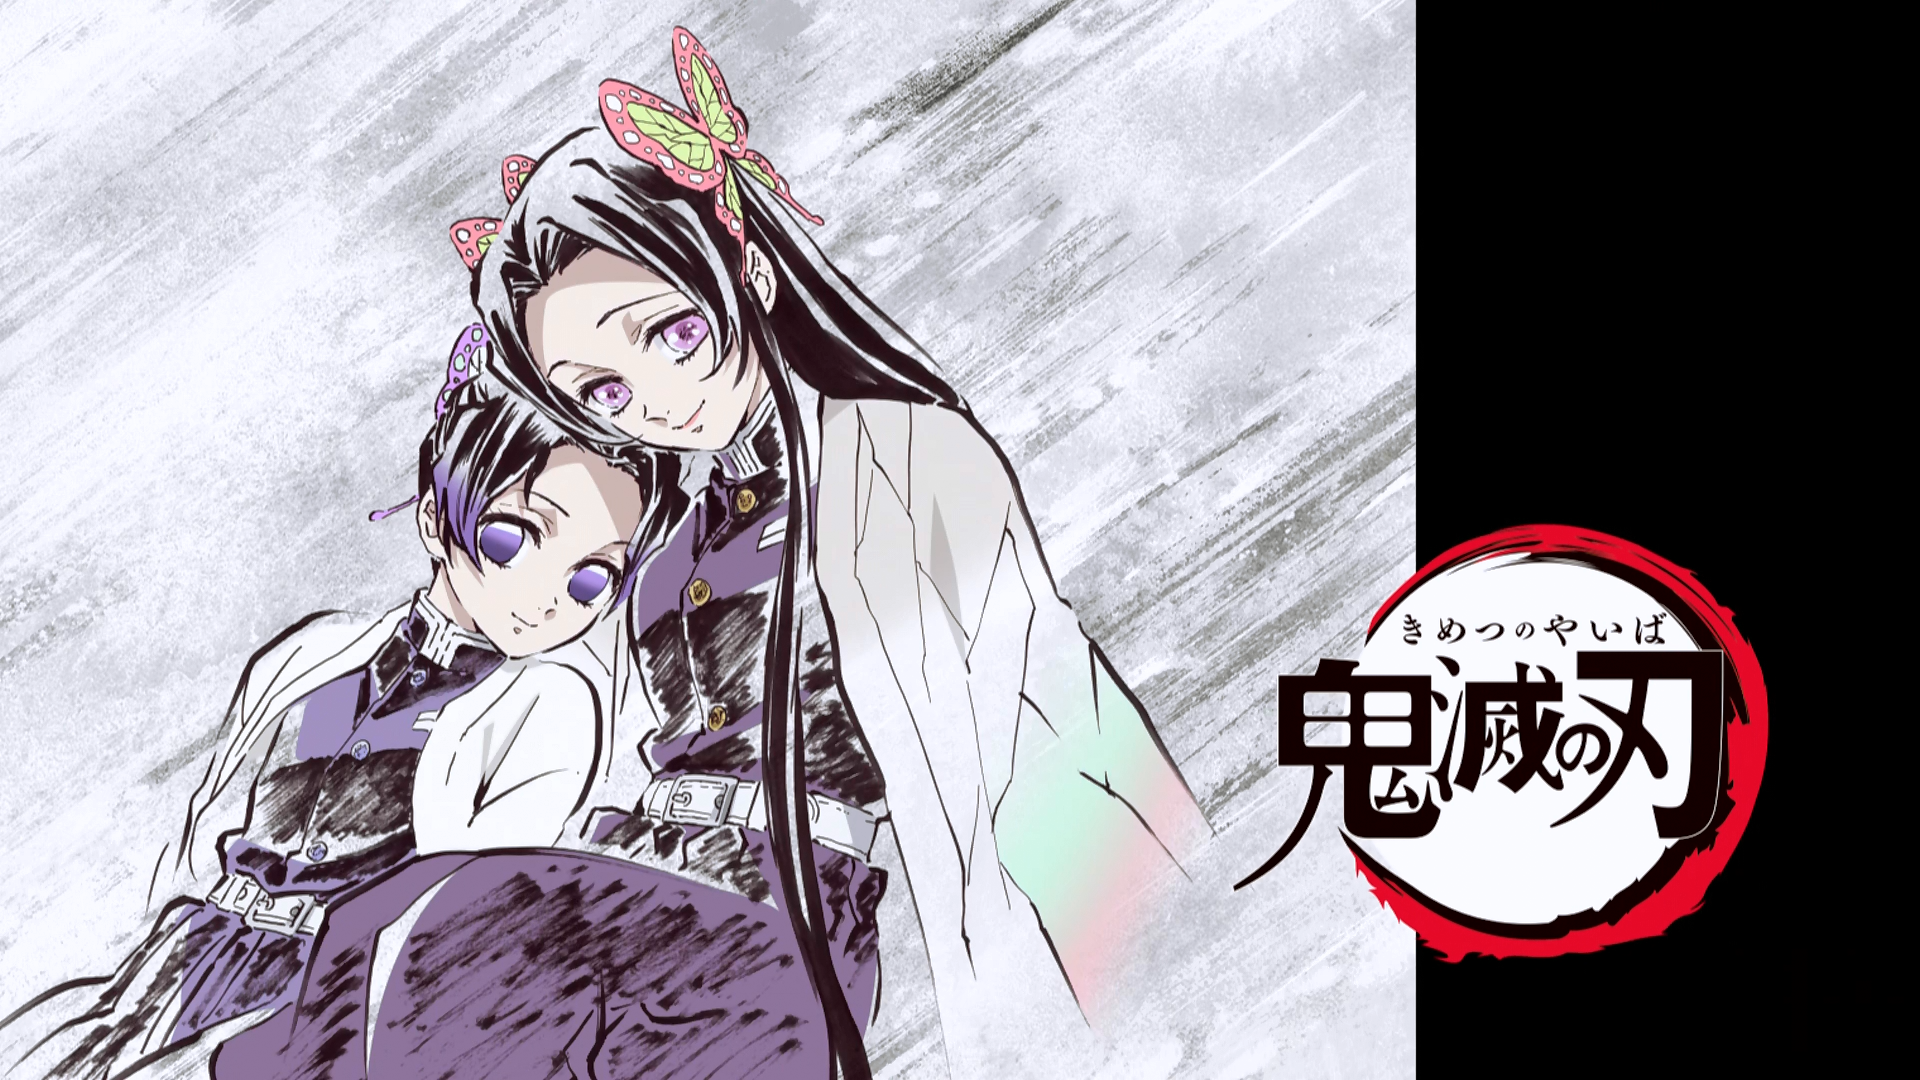 Demon Slayer Kimetsu no Yaiba Kocho Shinobu feature anime ep 25 eyecatch